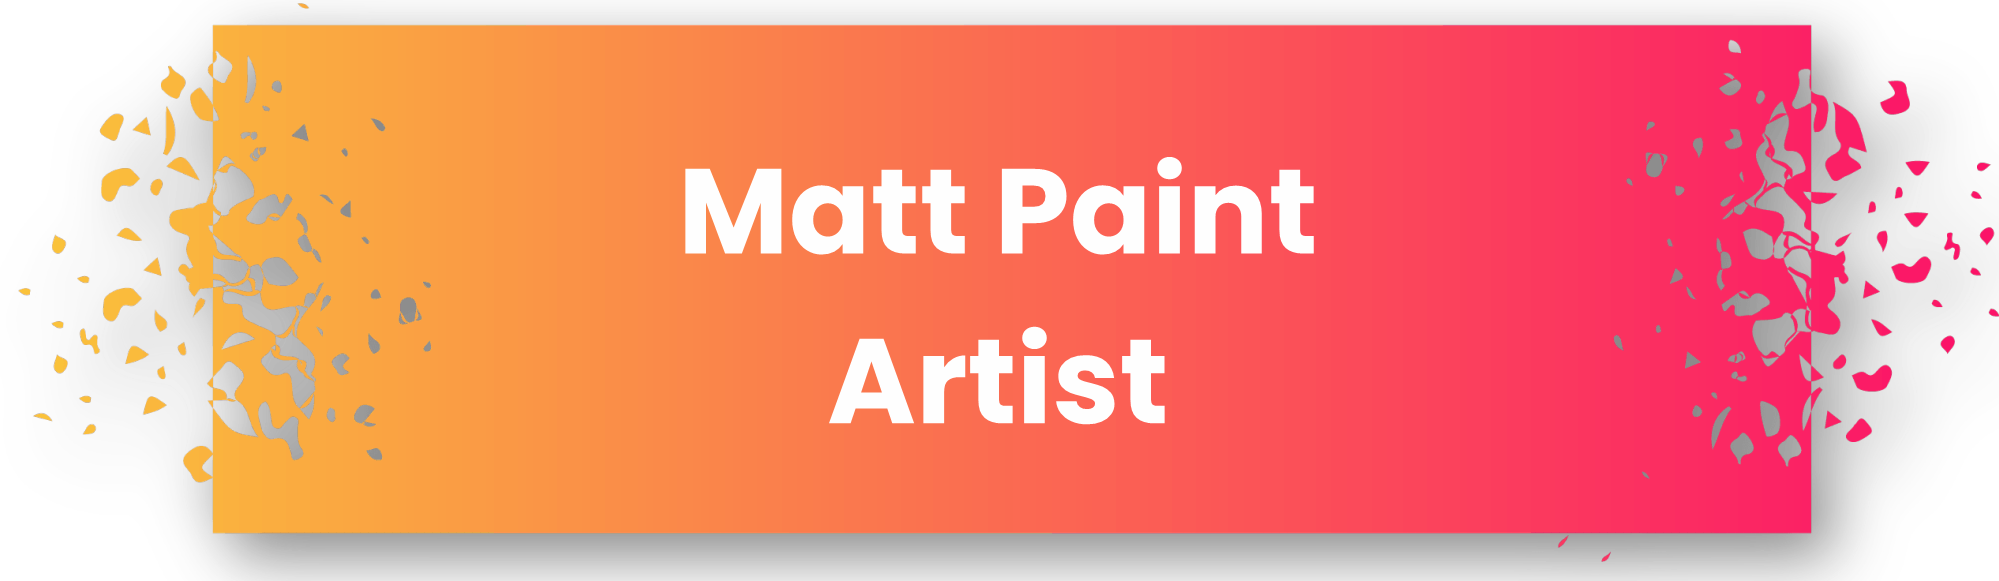 Matt Paint